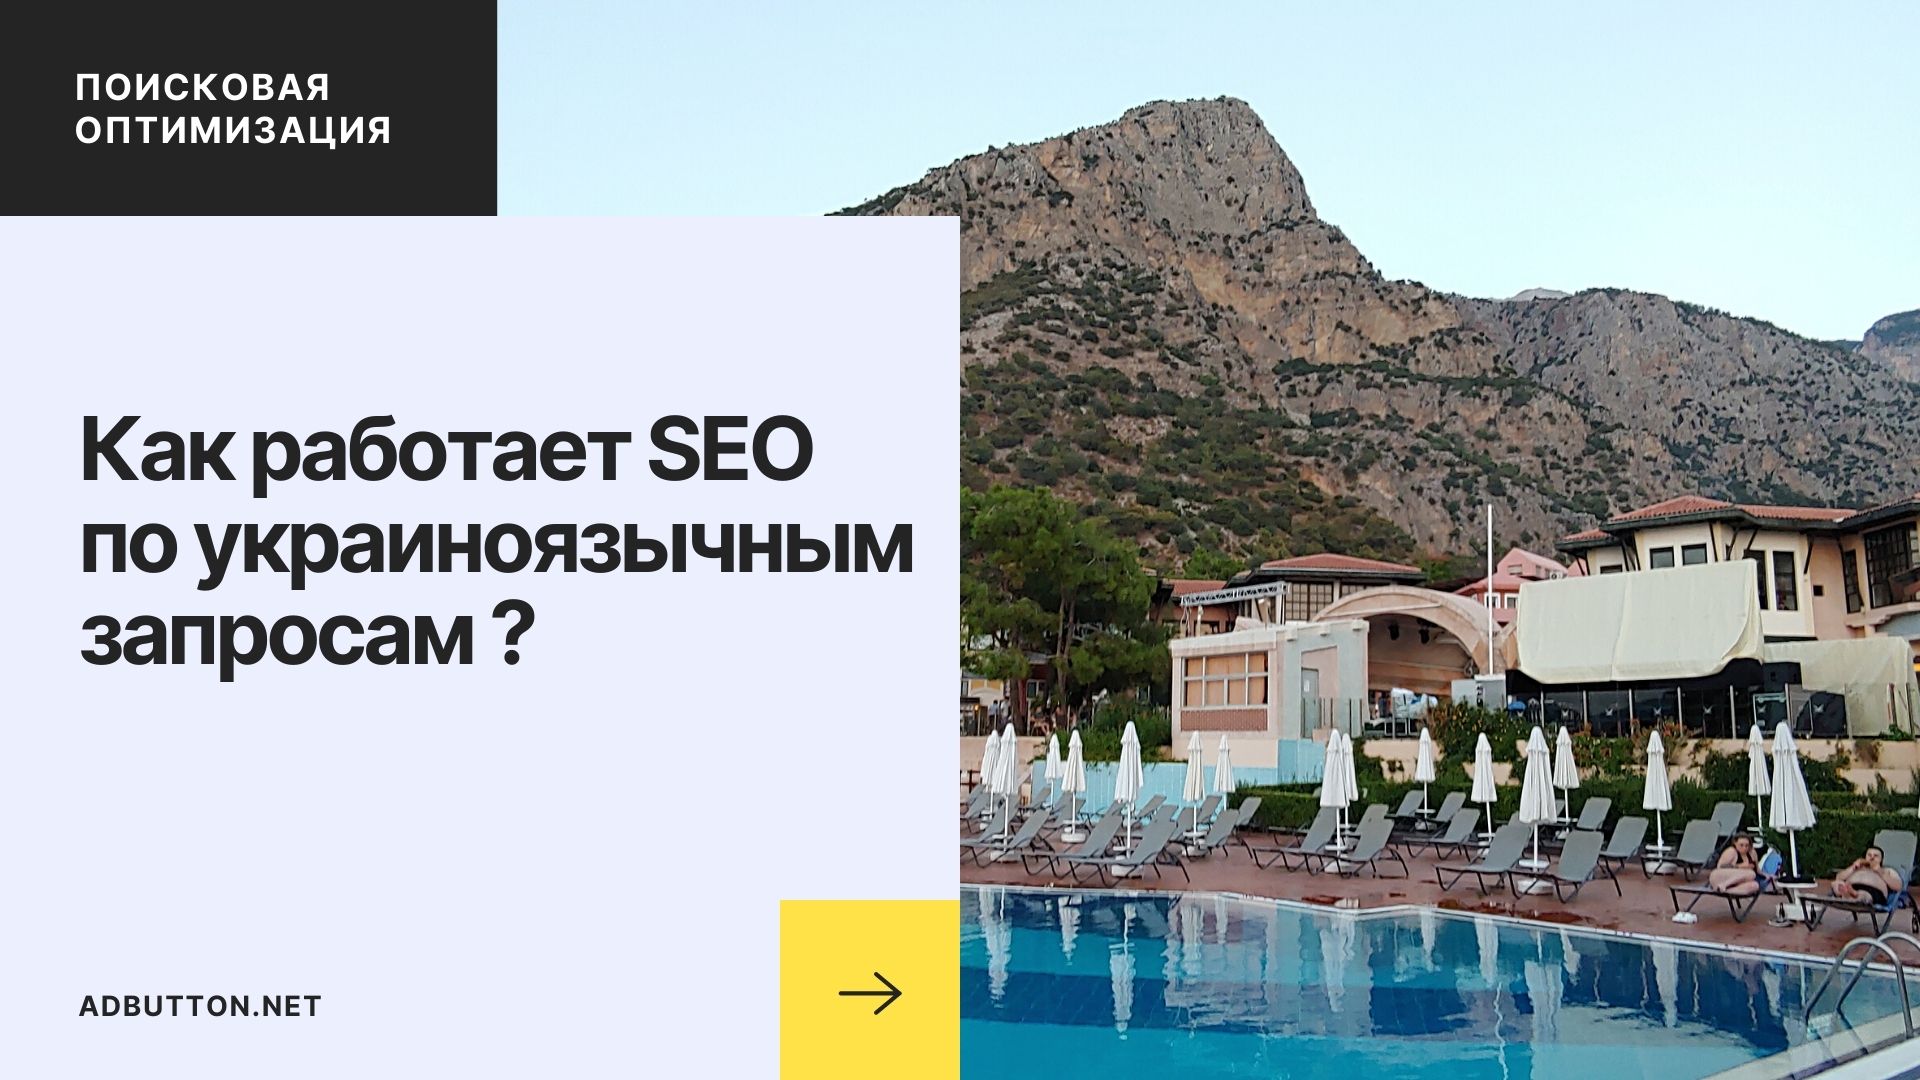 Как работает SEO по украиноязычным запросам и меняется динамика популярности сайта?